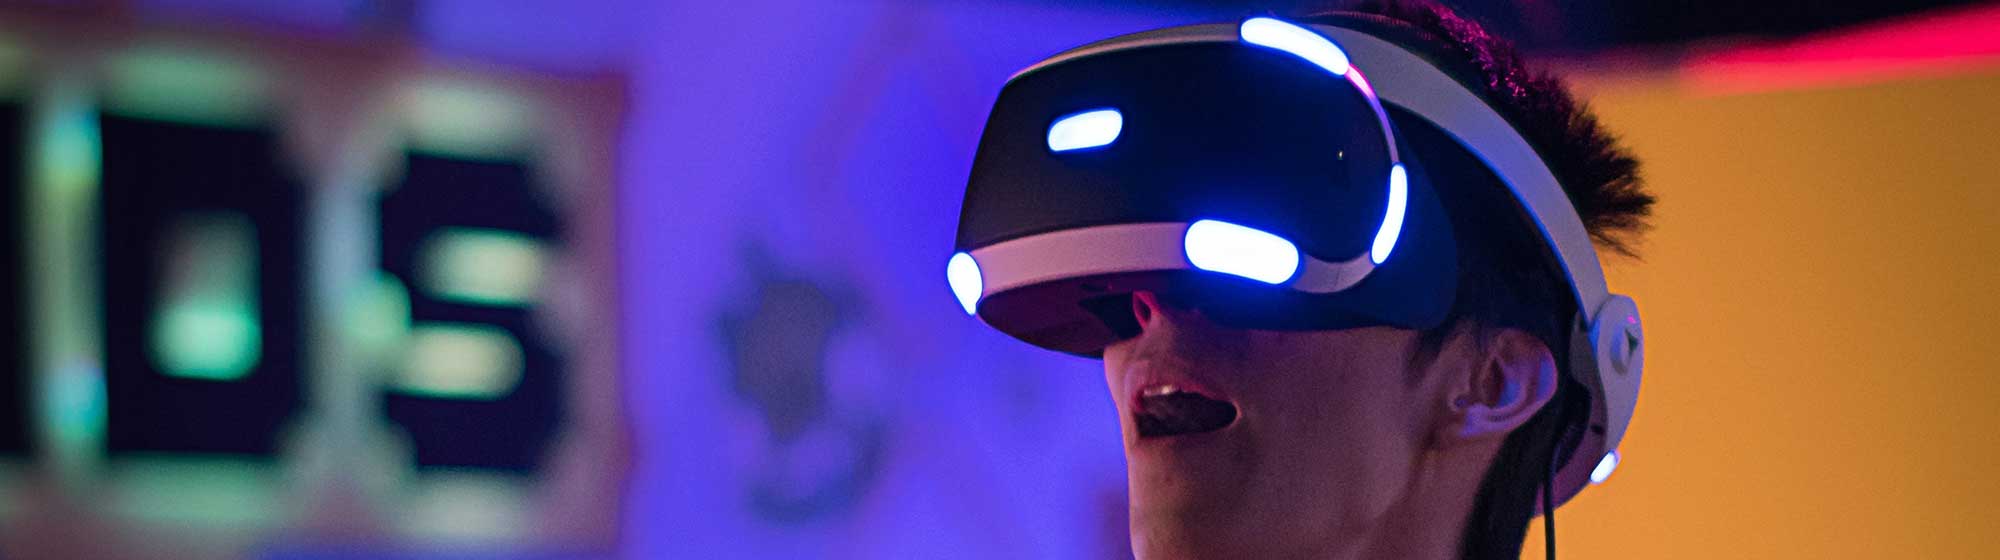 Homme en pleine simalutation casque de réalité virtuelle